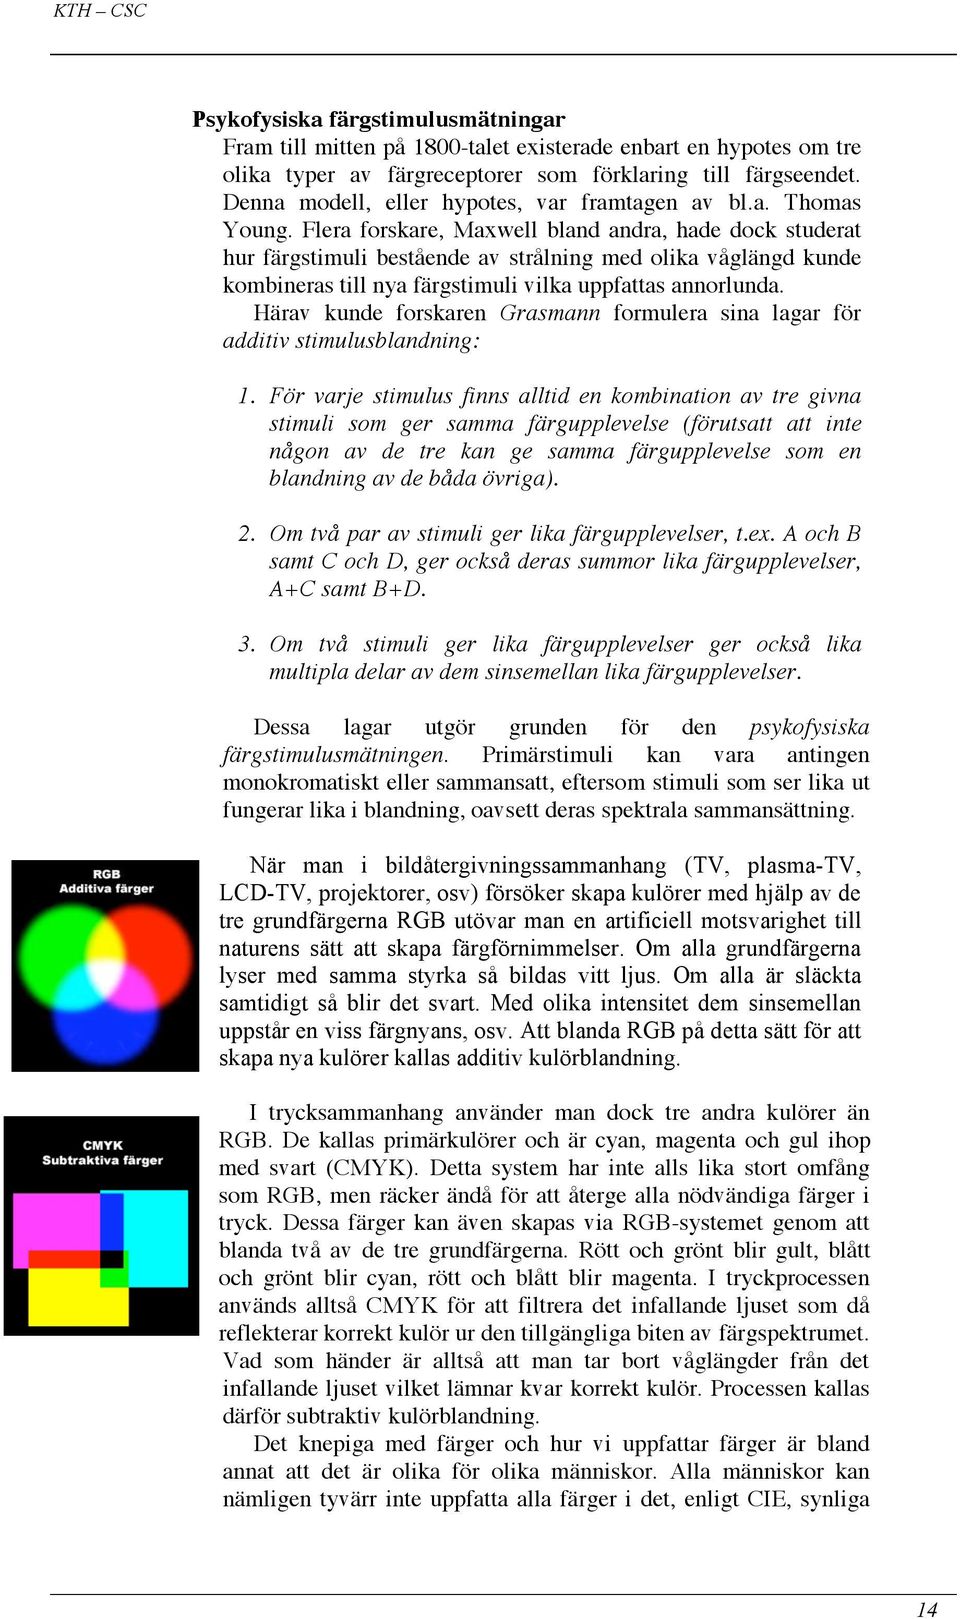 Flera forskare, Maxwell bland andra, hade dock studerat hur färgstimuli bestående av strålning med olika våglängd kunde kombineras till nya färgstimuli vilka uppfattas annorlunda.